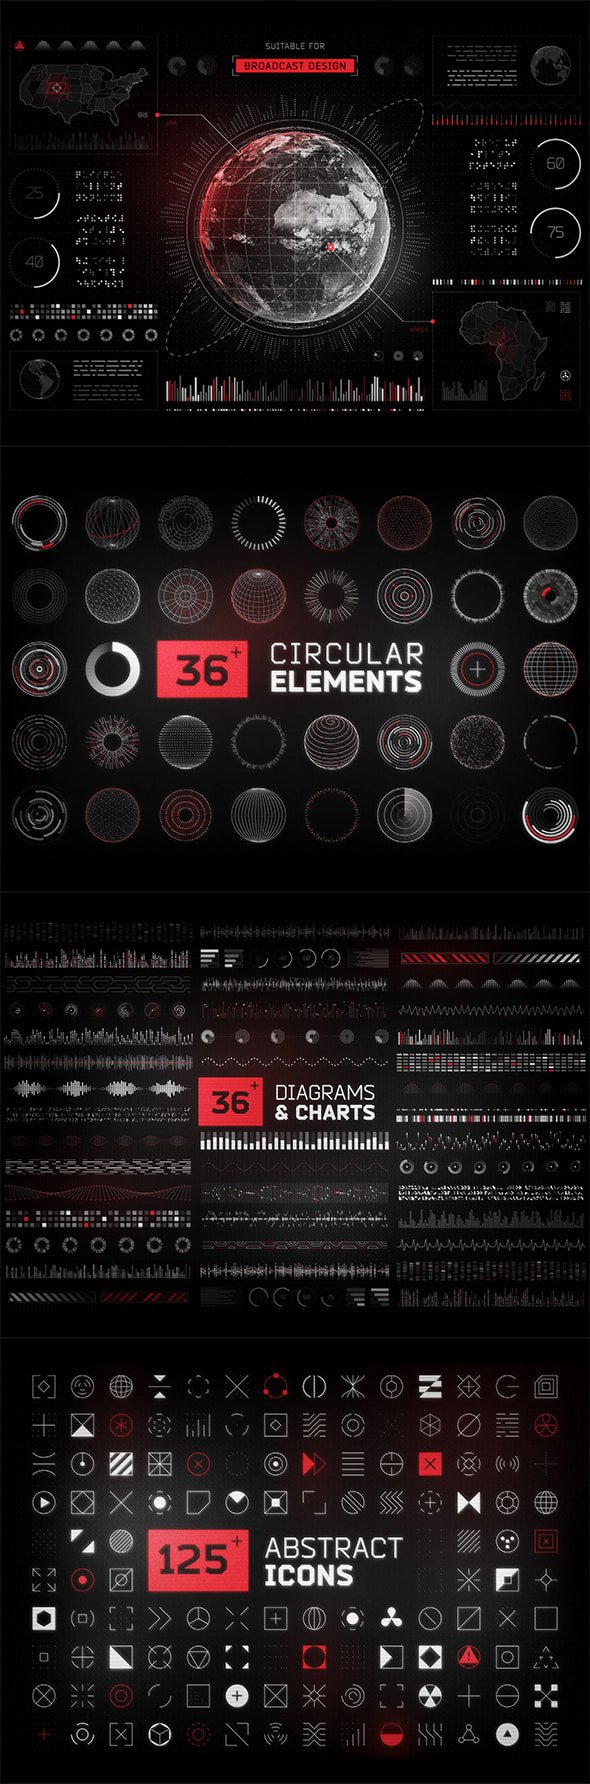 Ui8 - Futuristic UI Kit 200+ Design Elements